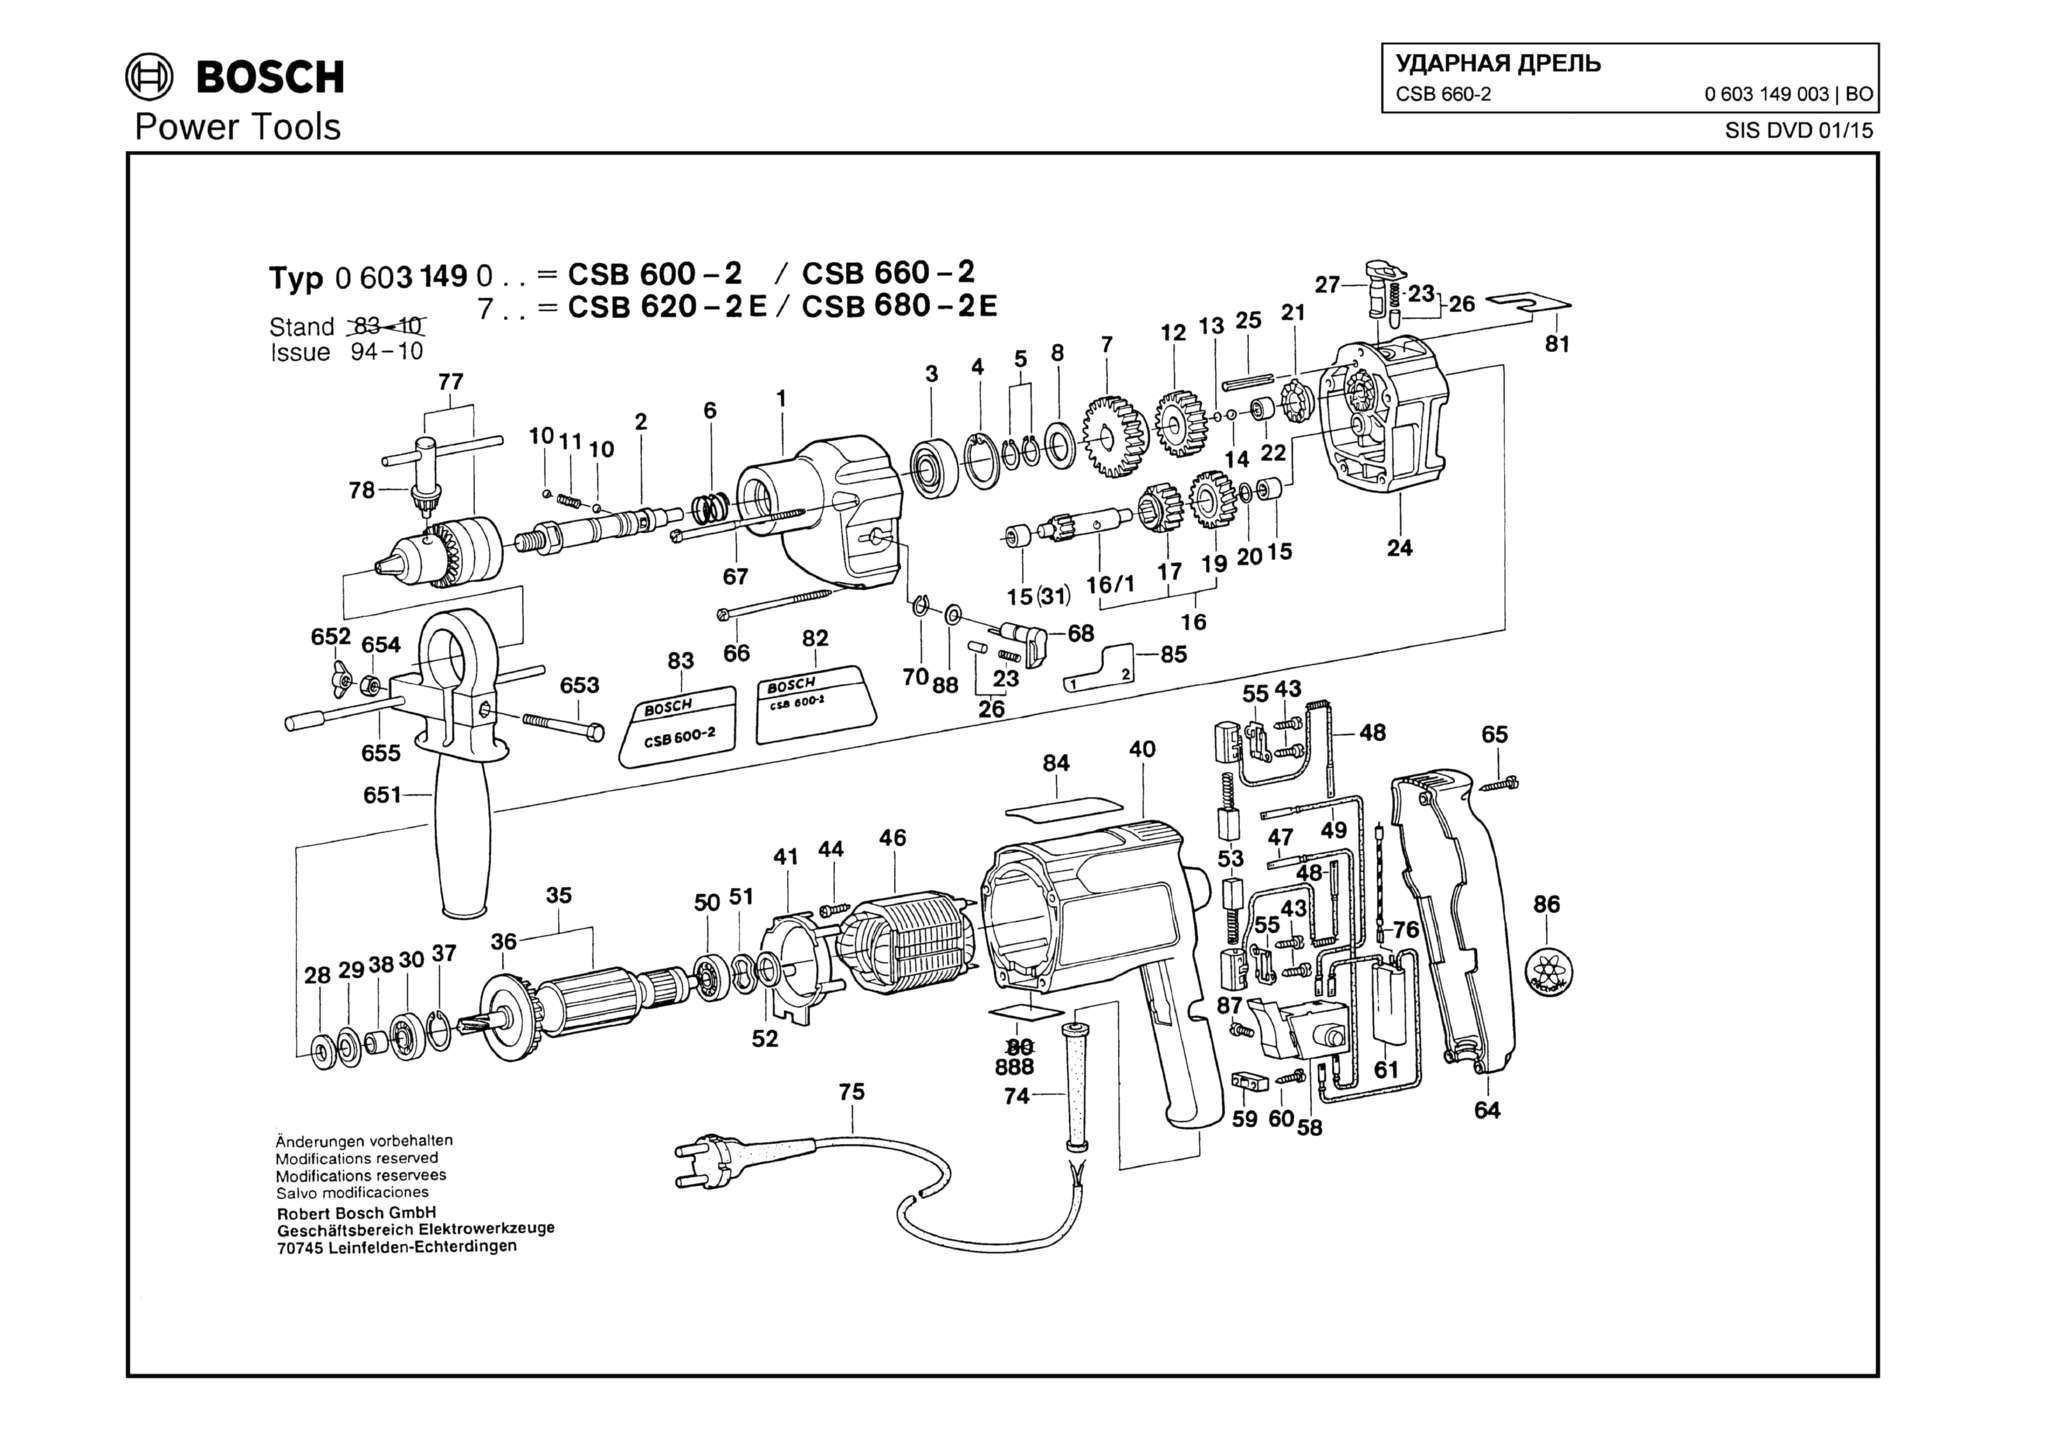 Запчасти, схема и деталировка Bosch CSB 660-2 (ТИП 0603149003)